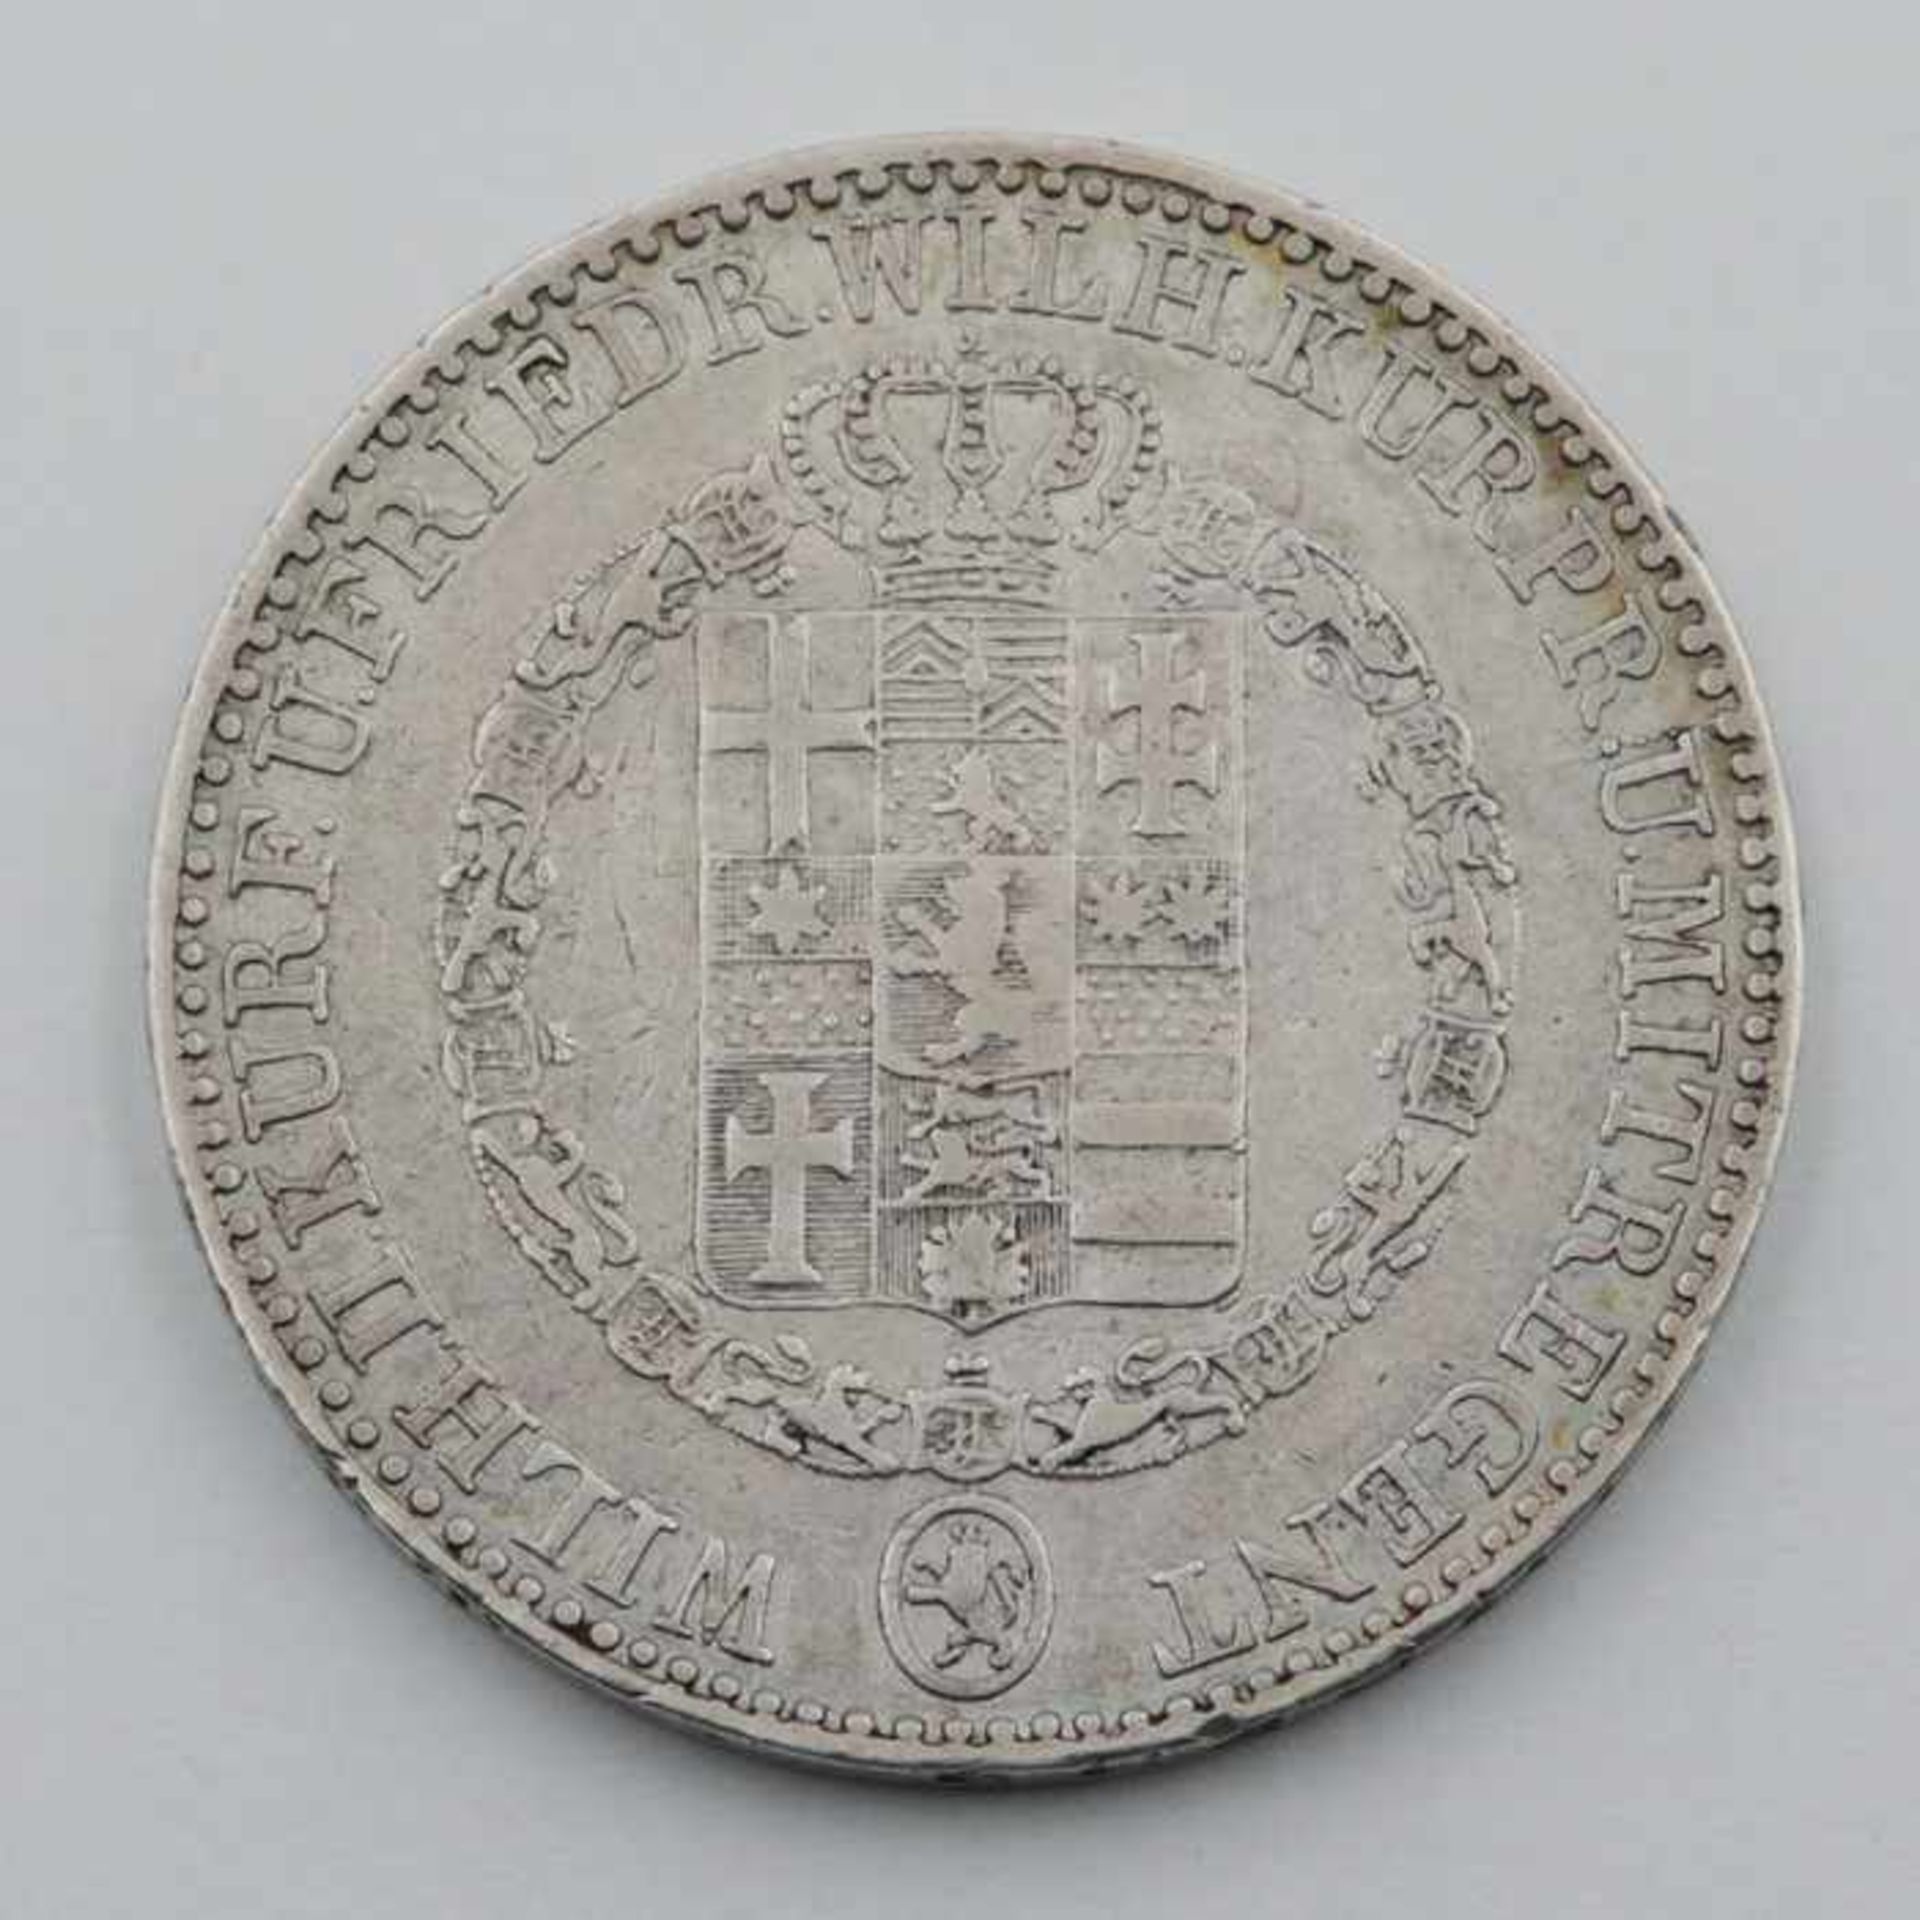 HessenSilbermünze, 1 Taler, 1841, Kurfürstentum Hessen, Wilhelm II. u. Friedrich Wilhelm, ss,